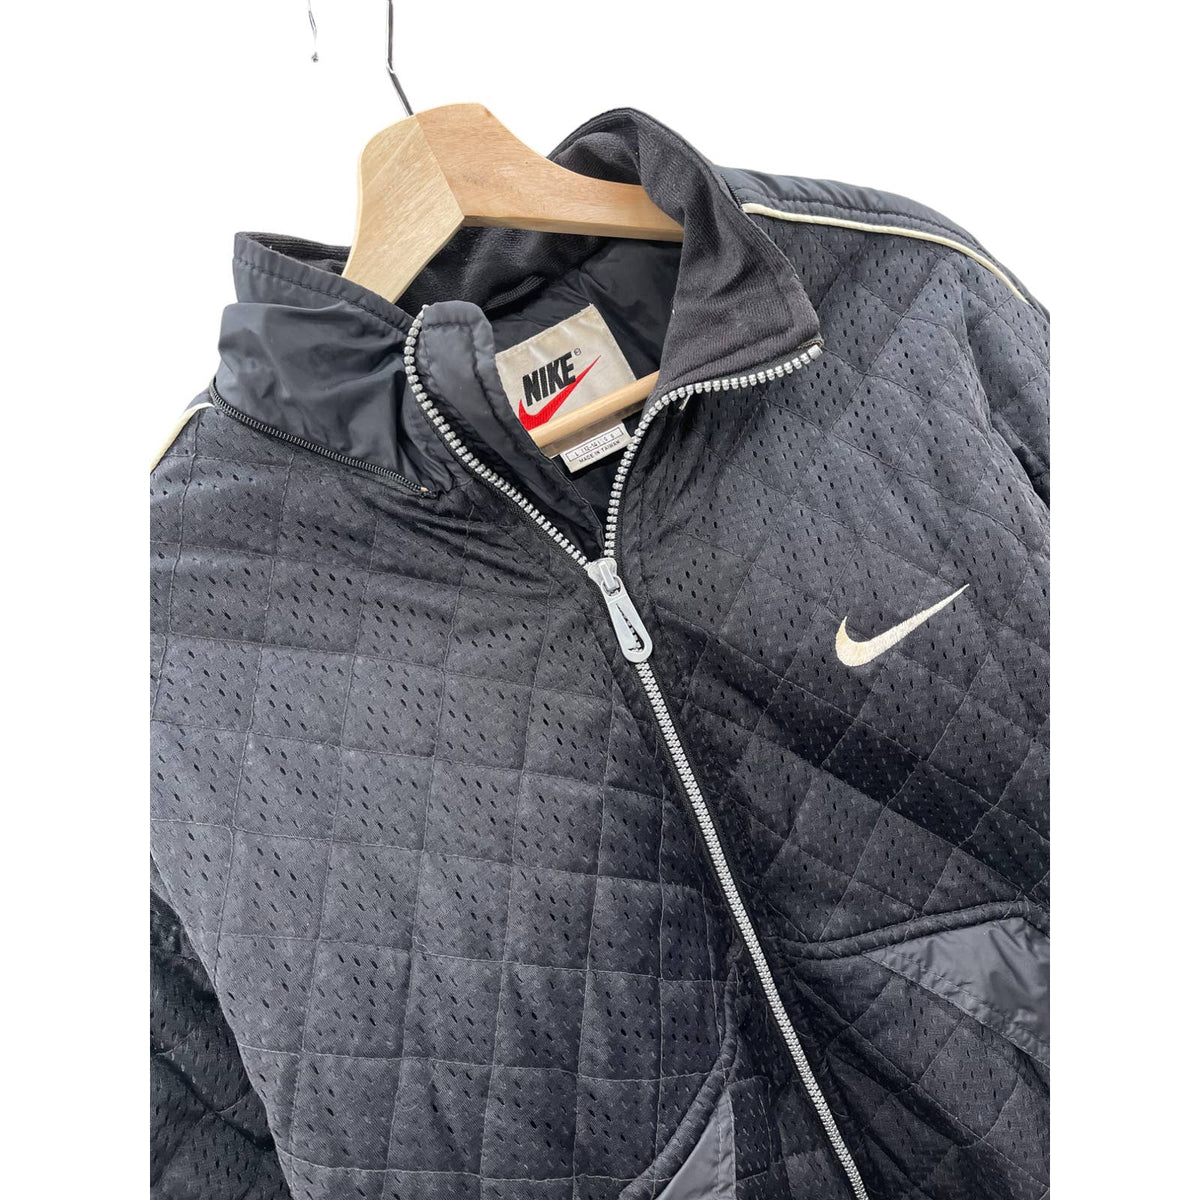 Vintage 1990's Nike Mesh Perforated Zip Up Jacket